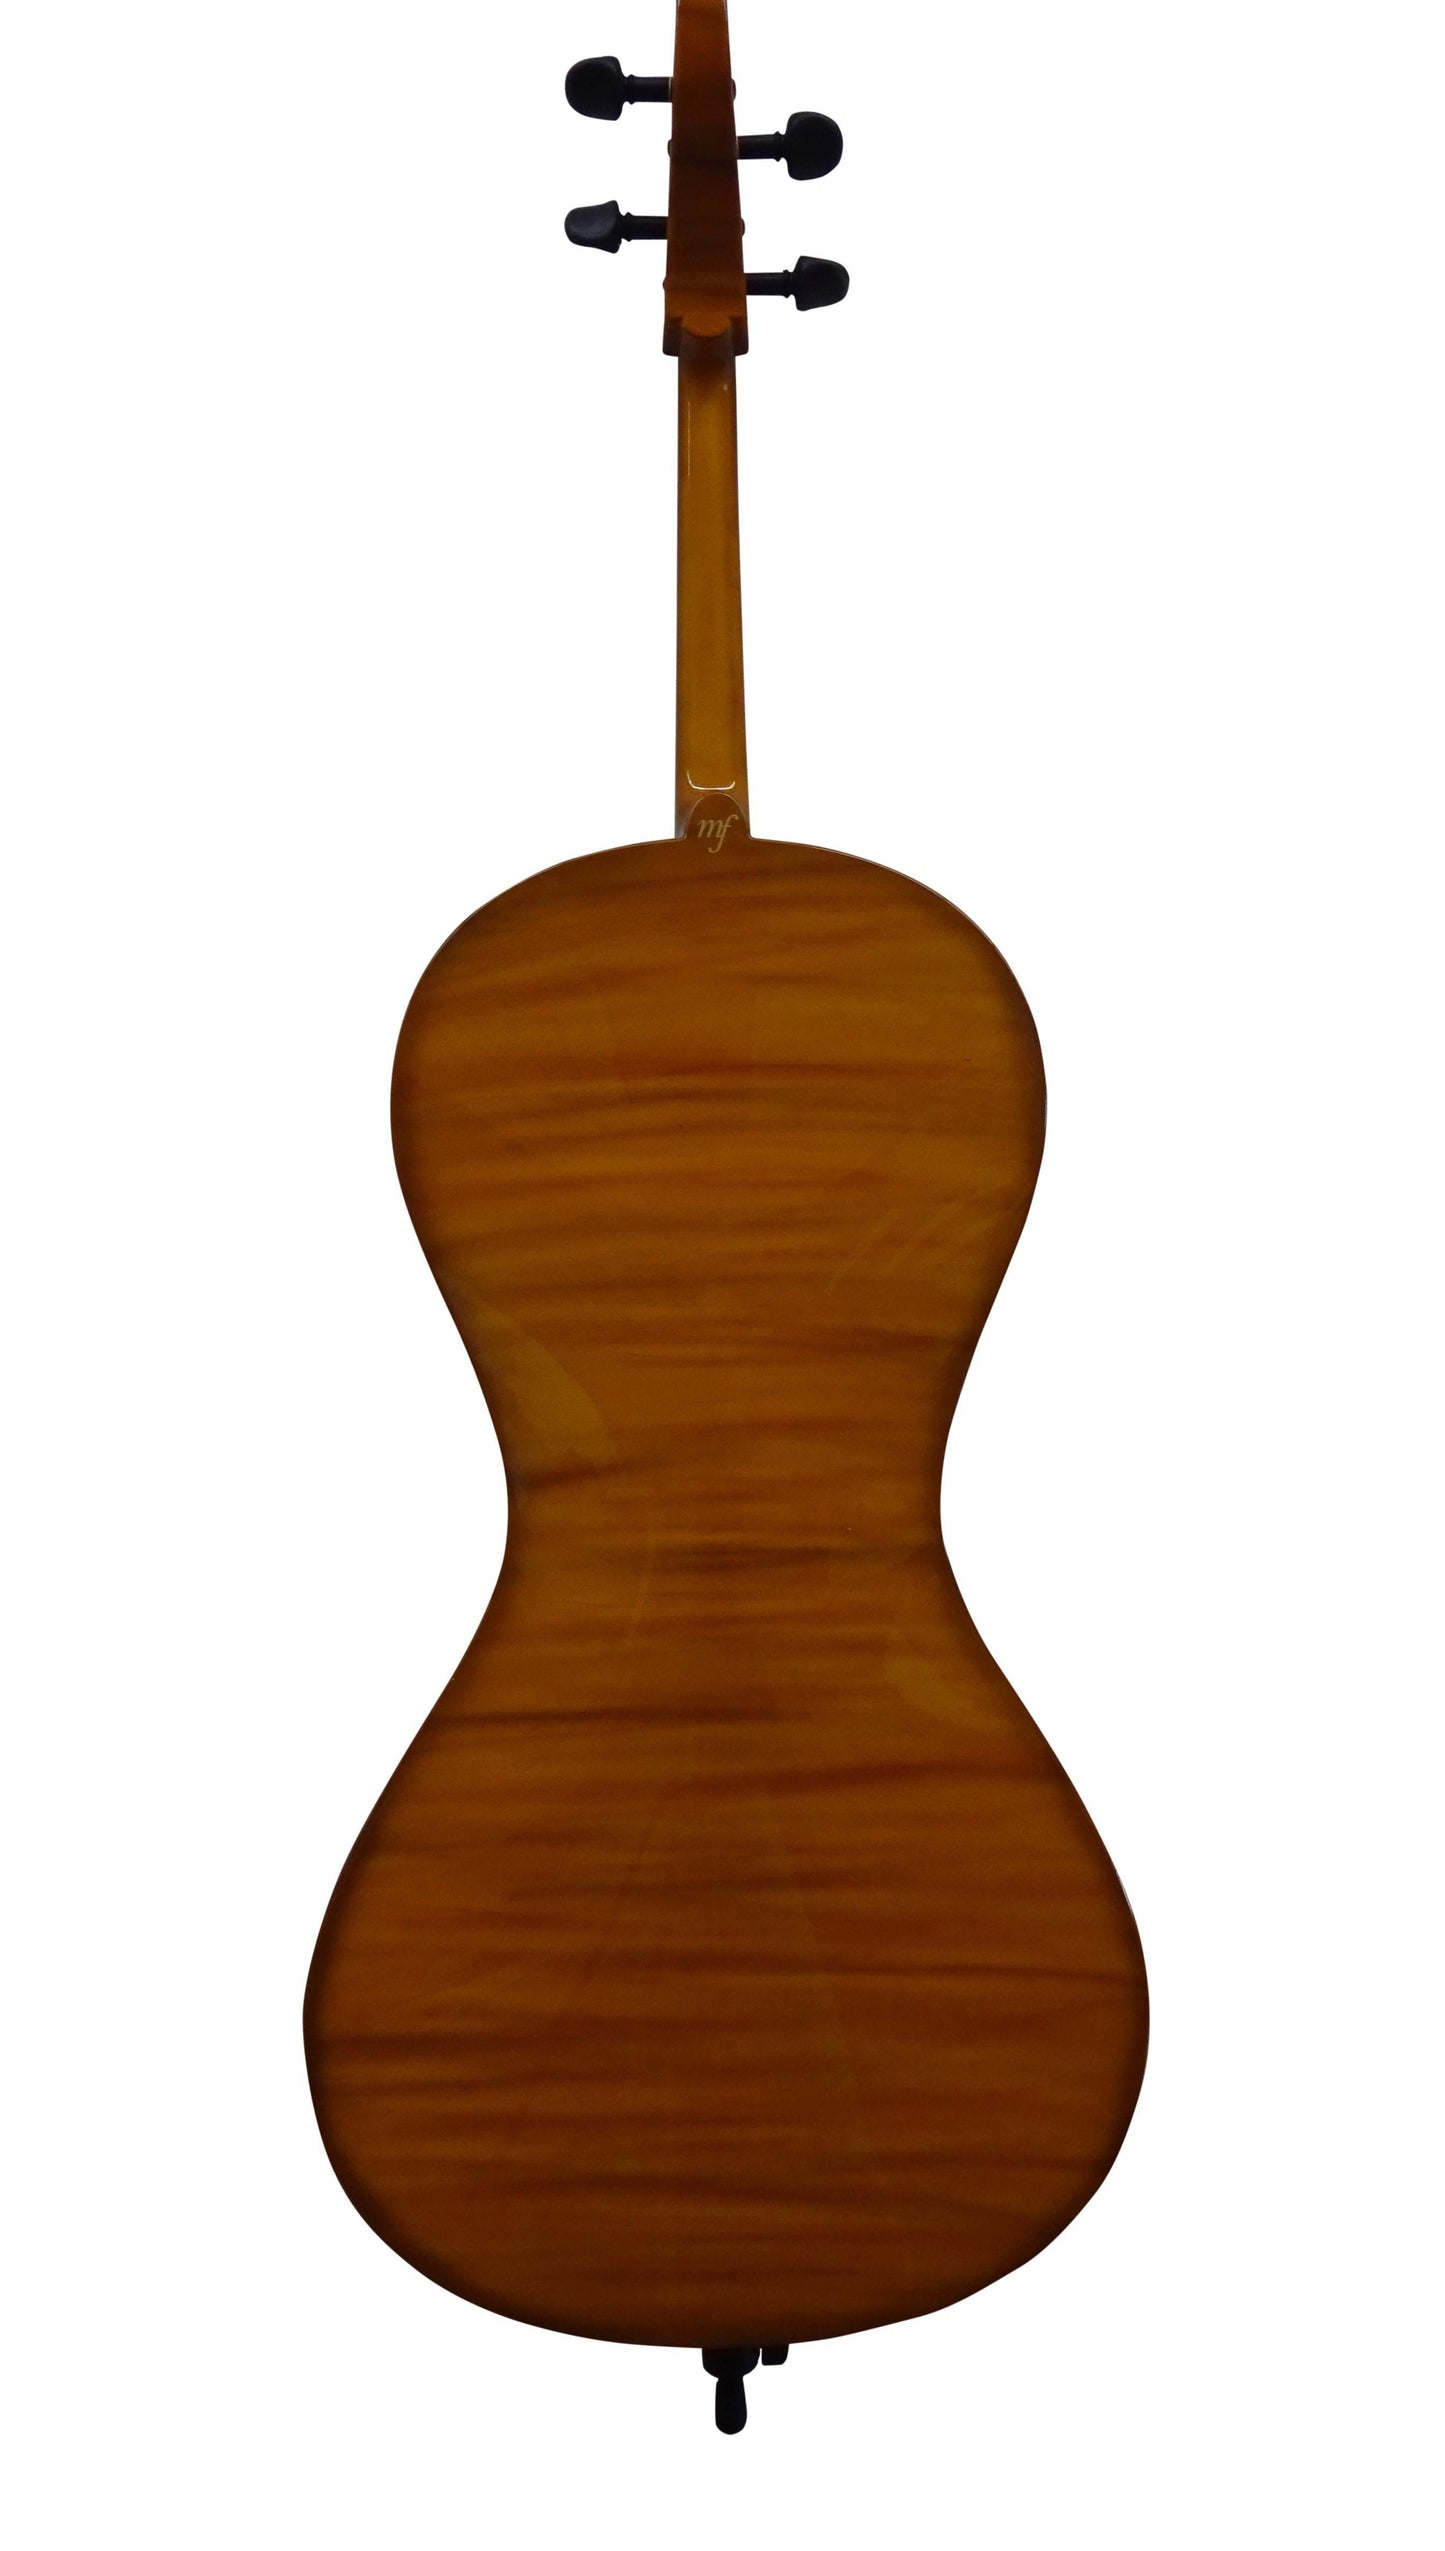 Carbon cello "Design Line" new model 2021